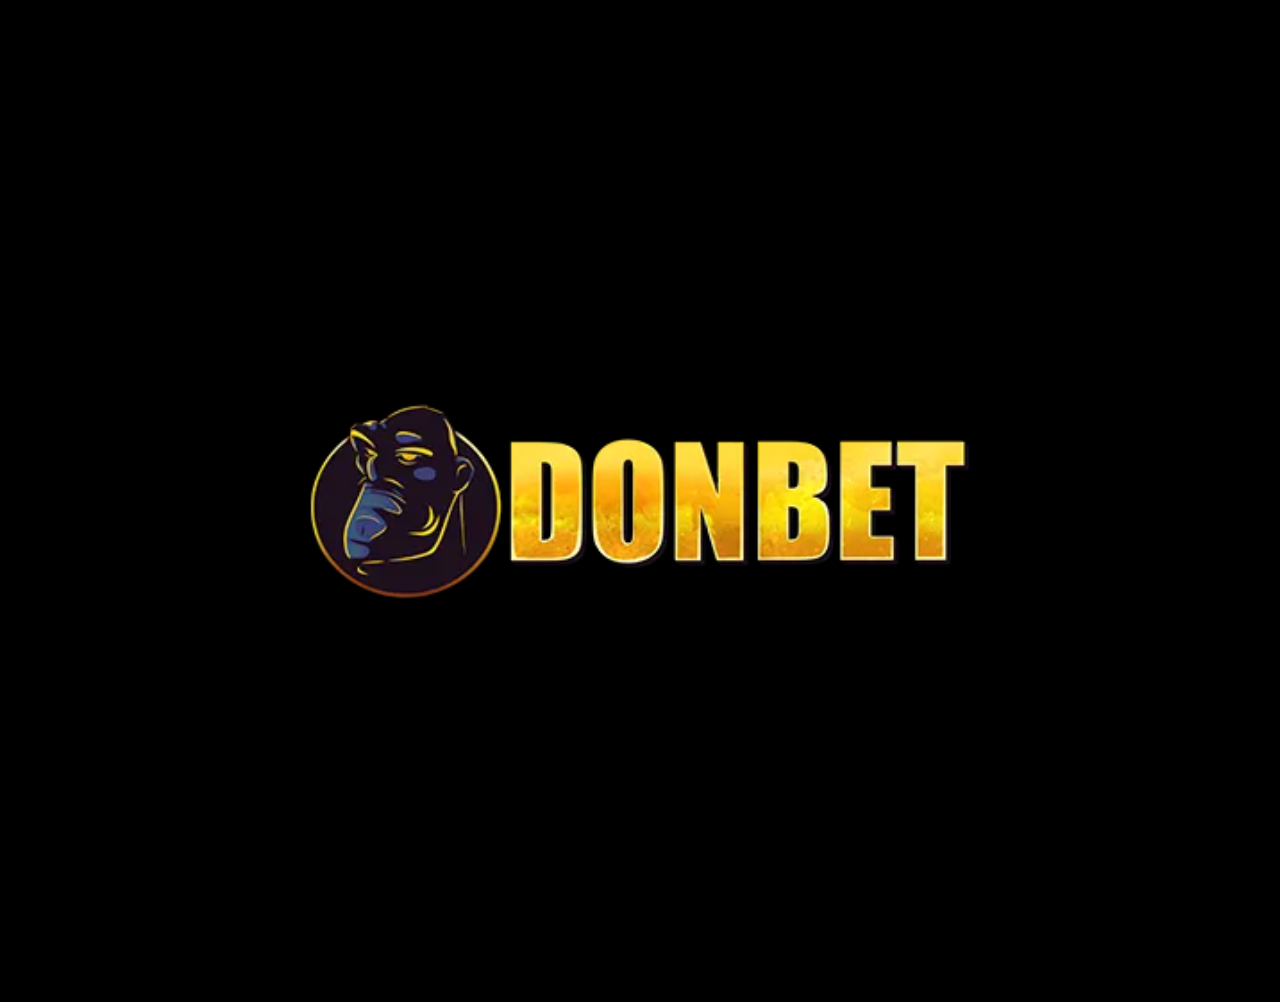 Donbet Casino Review